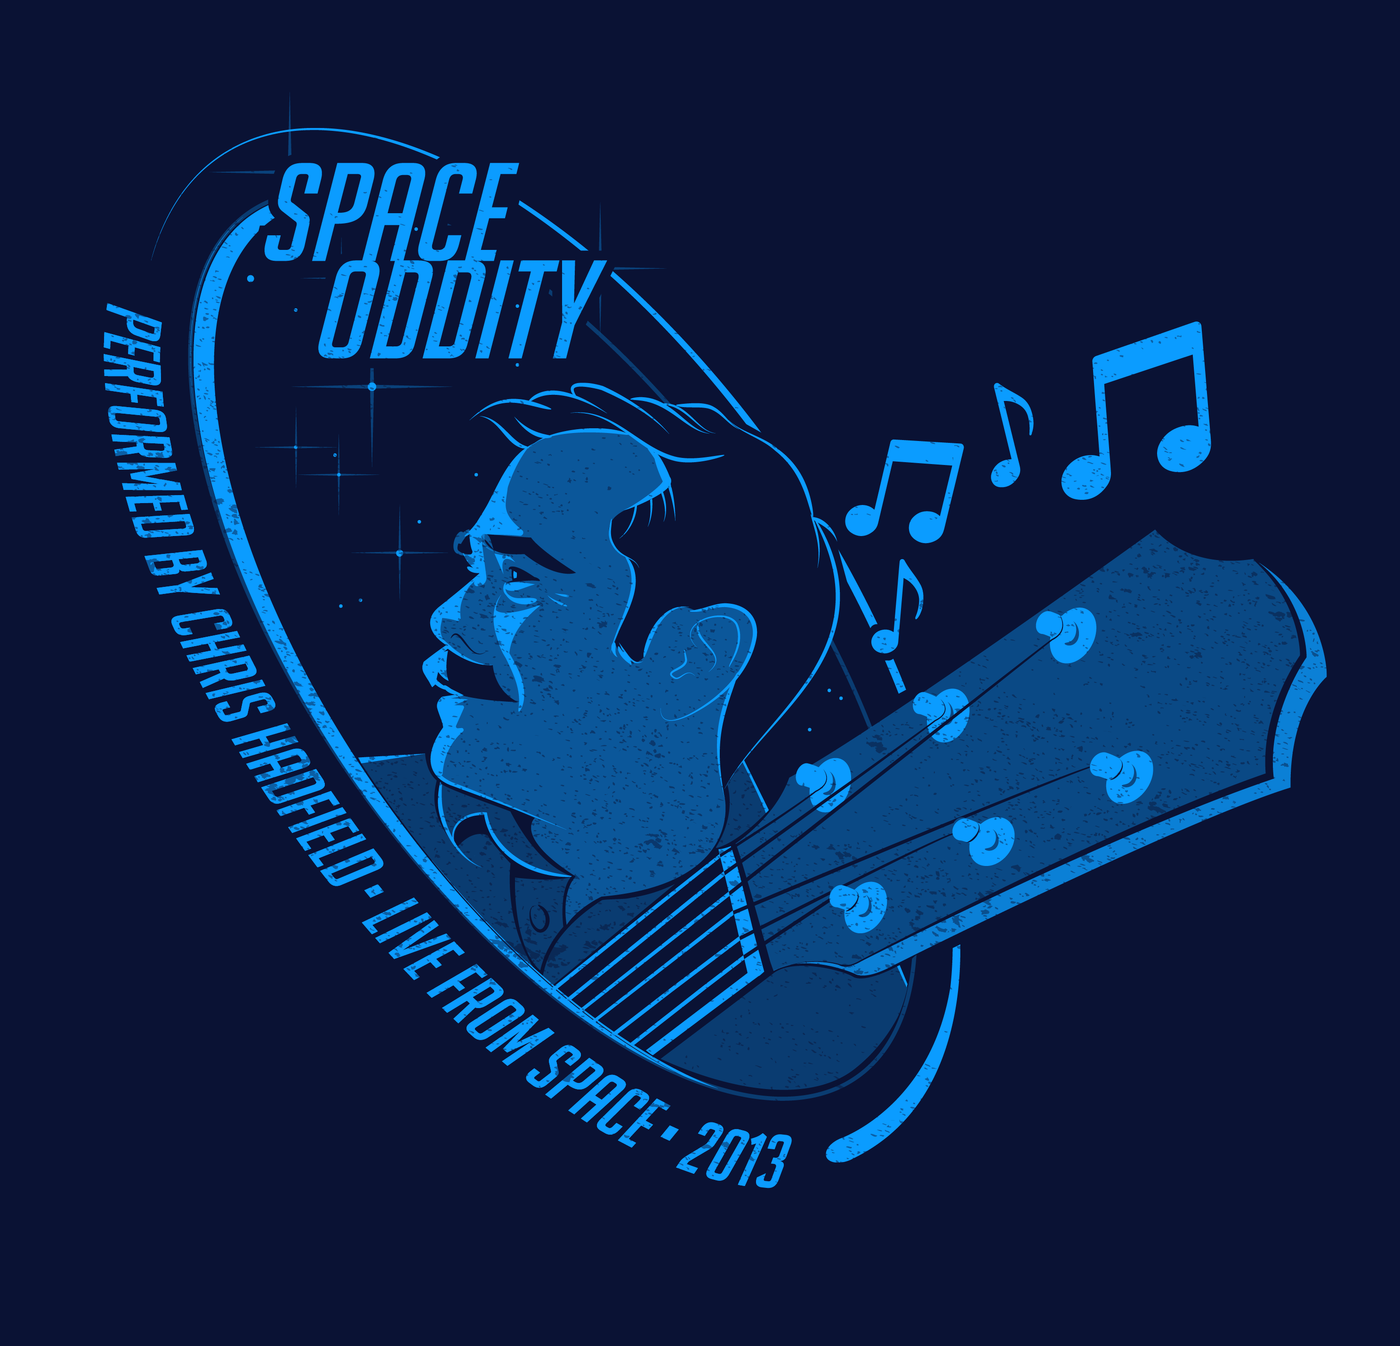 Vintage Space Oddity Concert Tee